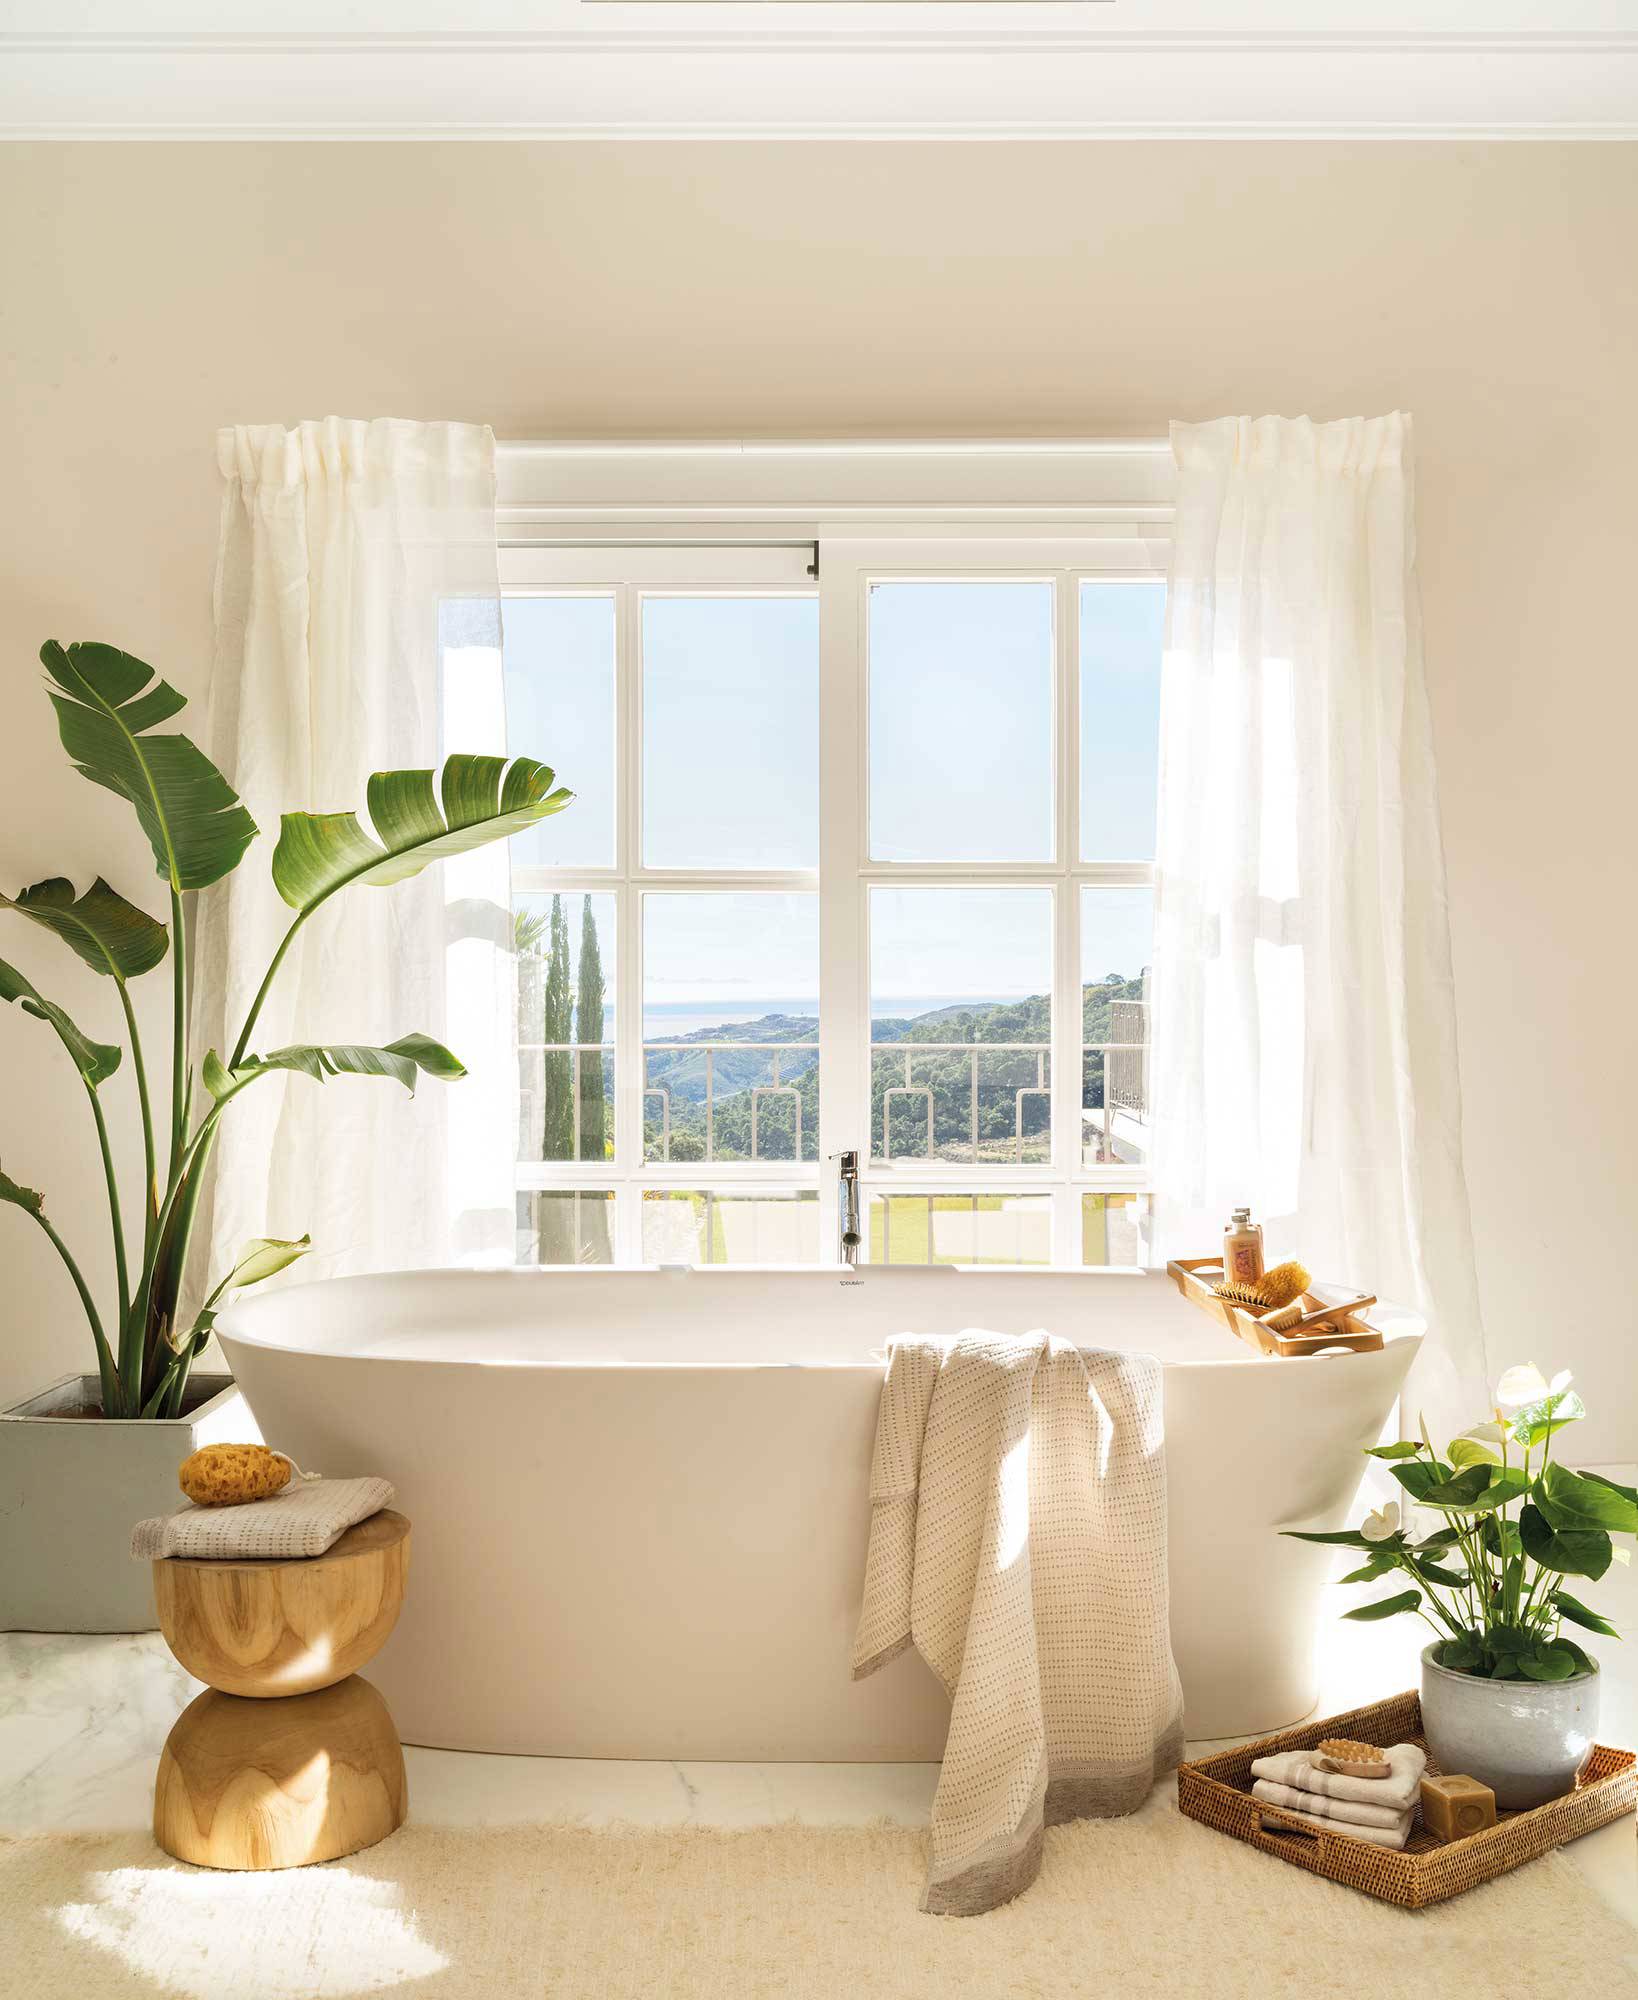 Entrégate al lujo con plantas de interior junto a la bañera